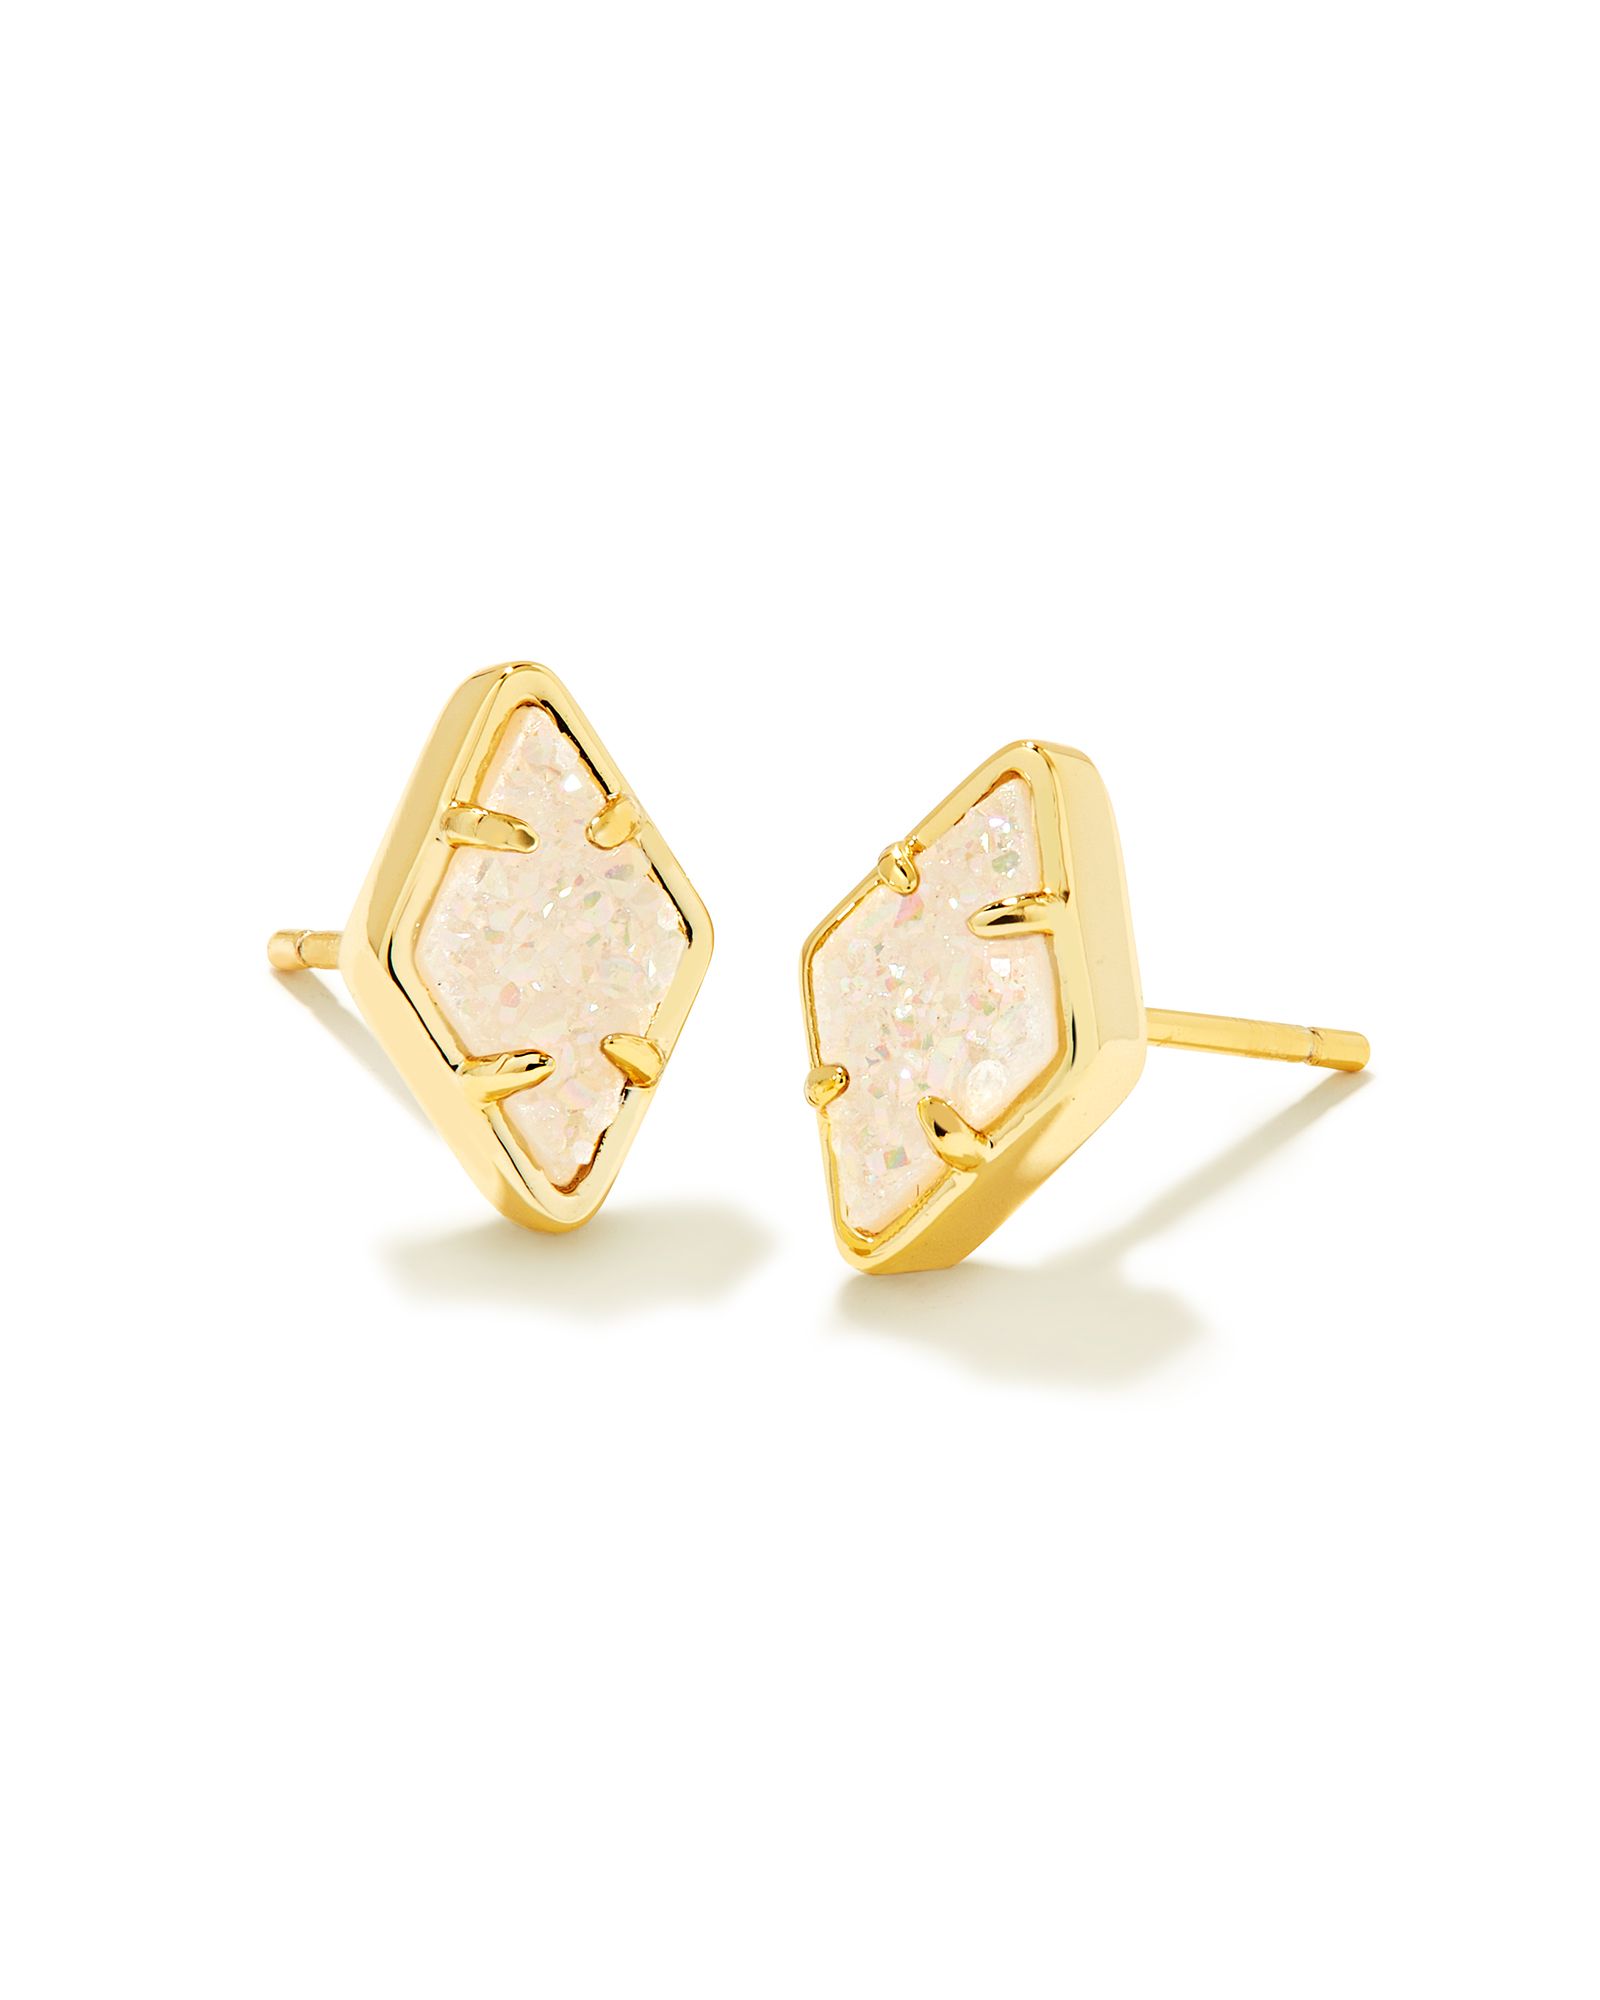 Kinsley Gold Stud Earrings in Iridescent Drusy | Kendra Scott | Kendra Scott